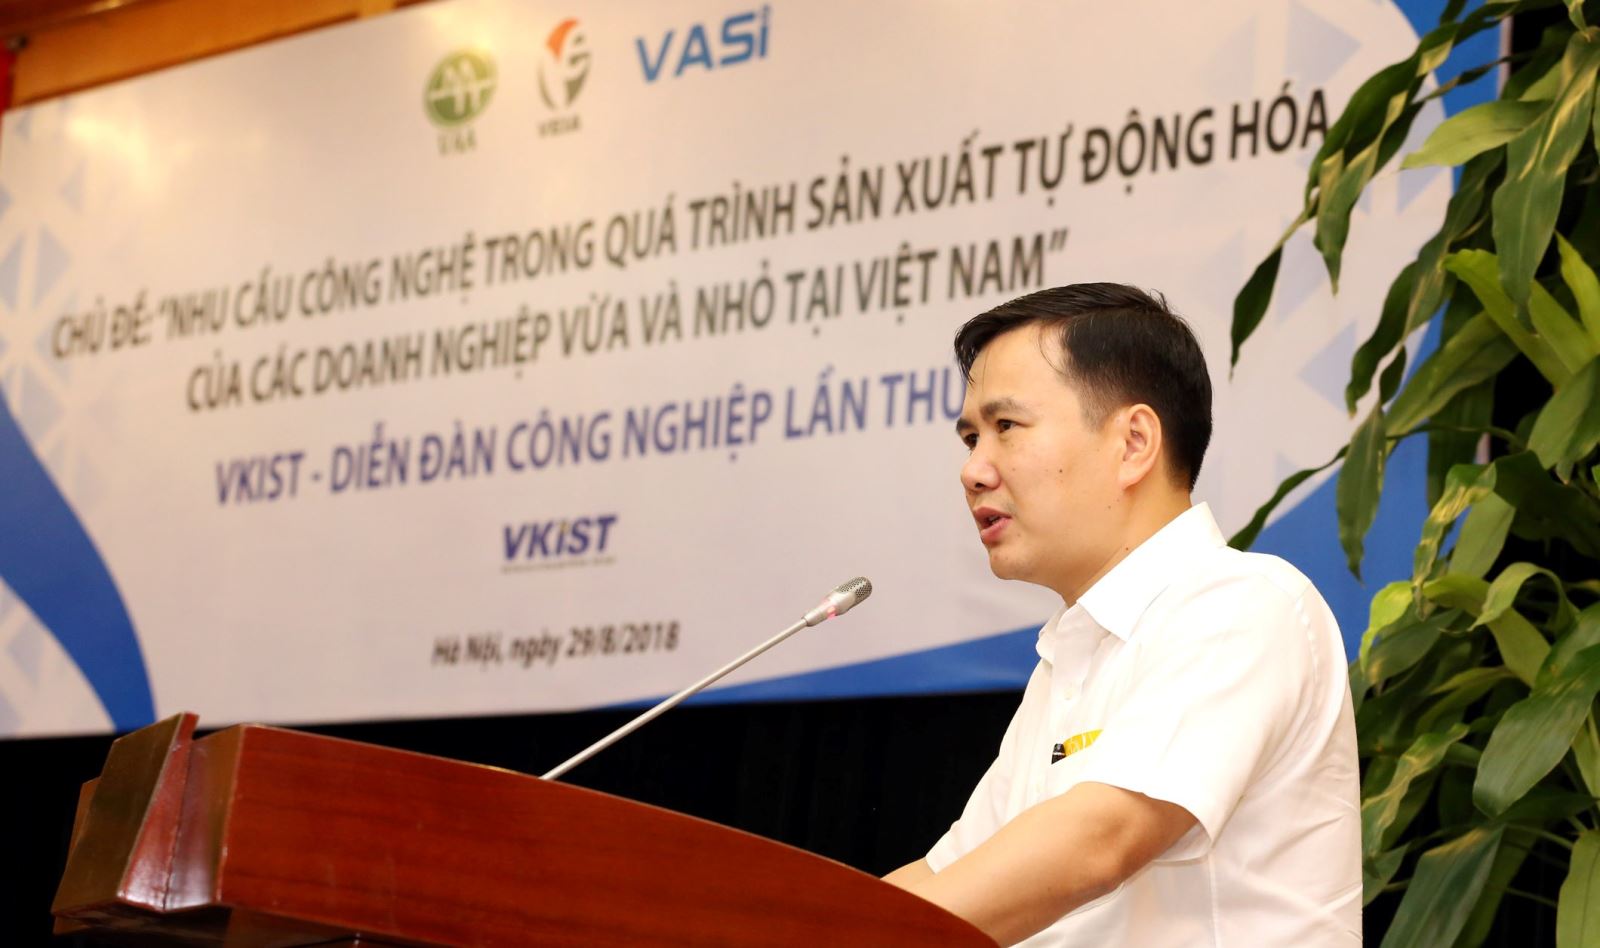 Nhu cầu công nghệ trong quá trình sản xuất tự động hóa của các doanh nghiệp vừa và nhỏ tại Việt Nam